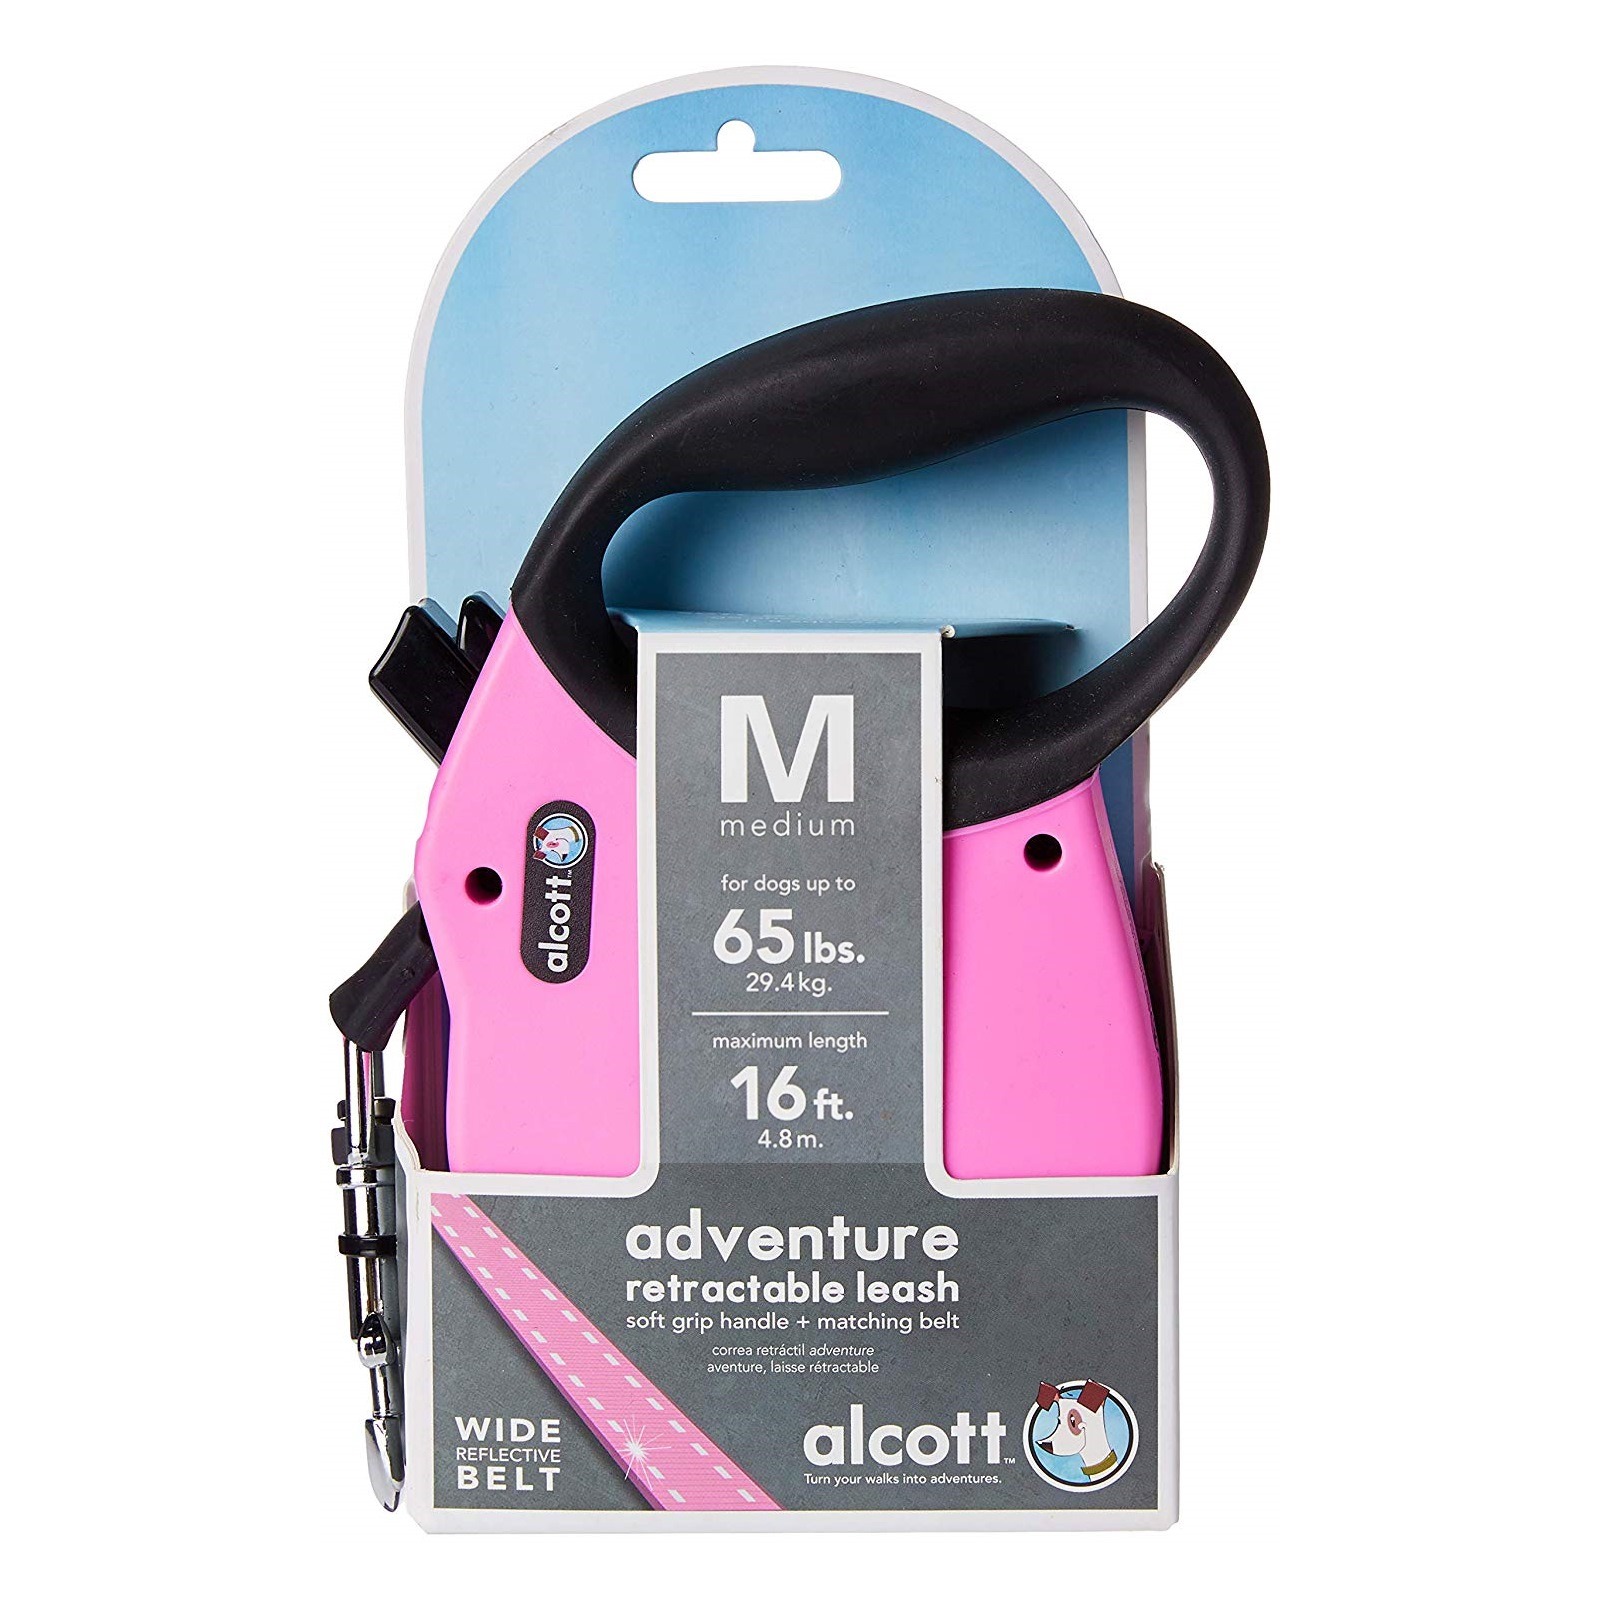 Alcott Flexi-ble Adventure Retractable Tape Dog Leash - Pink image 3